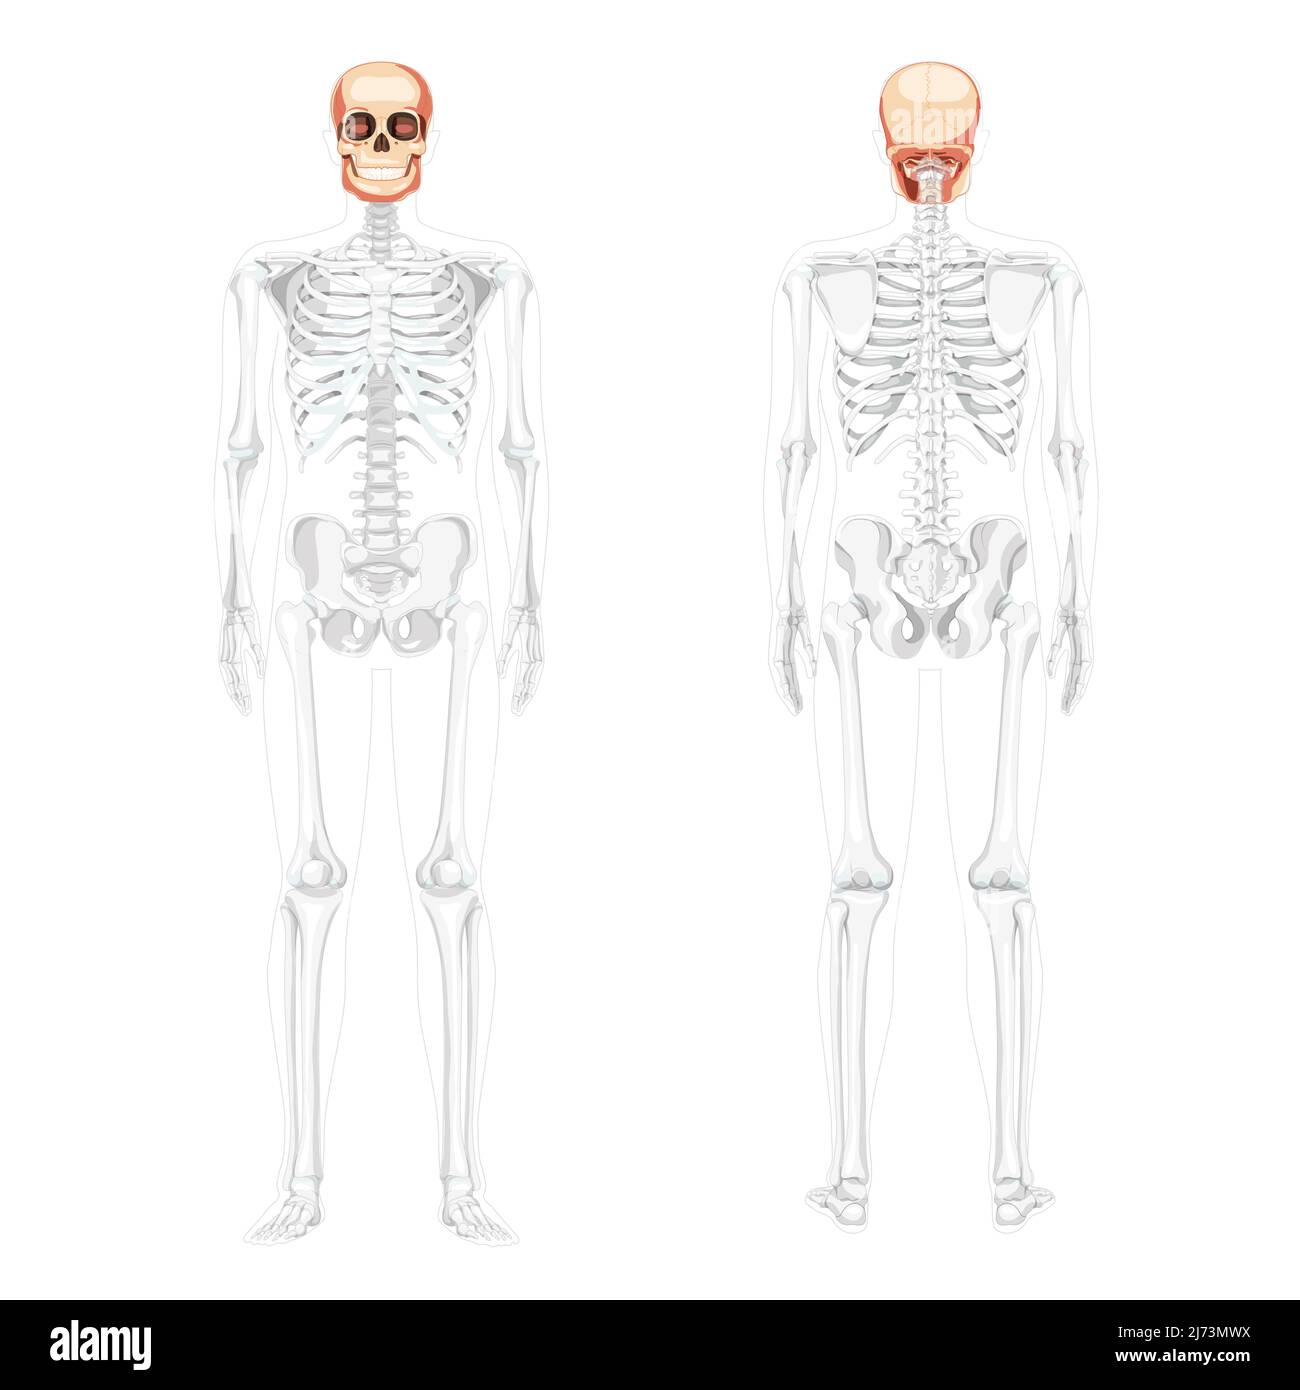 Ensemble de crâne tête humaine Skeleton vue arrière avant avec les mains latérales partiellement transparente position du corps. Modèle de mâchoires humaines. Image vectorielle réaliste et réaliste isolée sur fond blanc Illustration de Vecteur